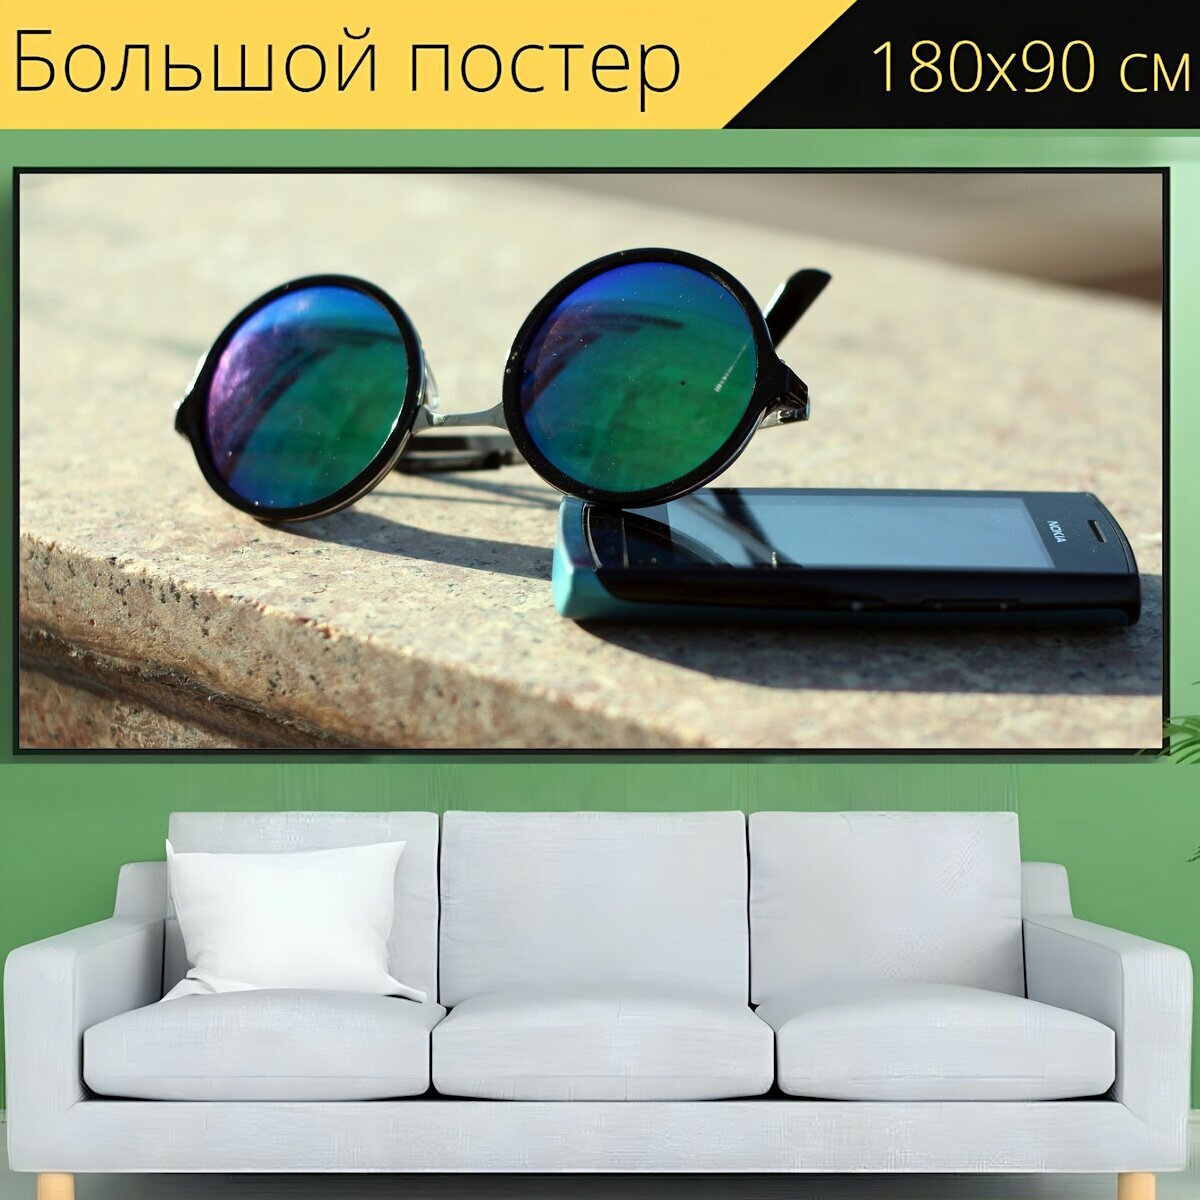 Большой постер "Очки, солнечные очки, ретро" 180 x 90 см. для интерьера